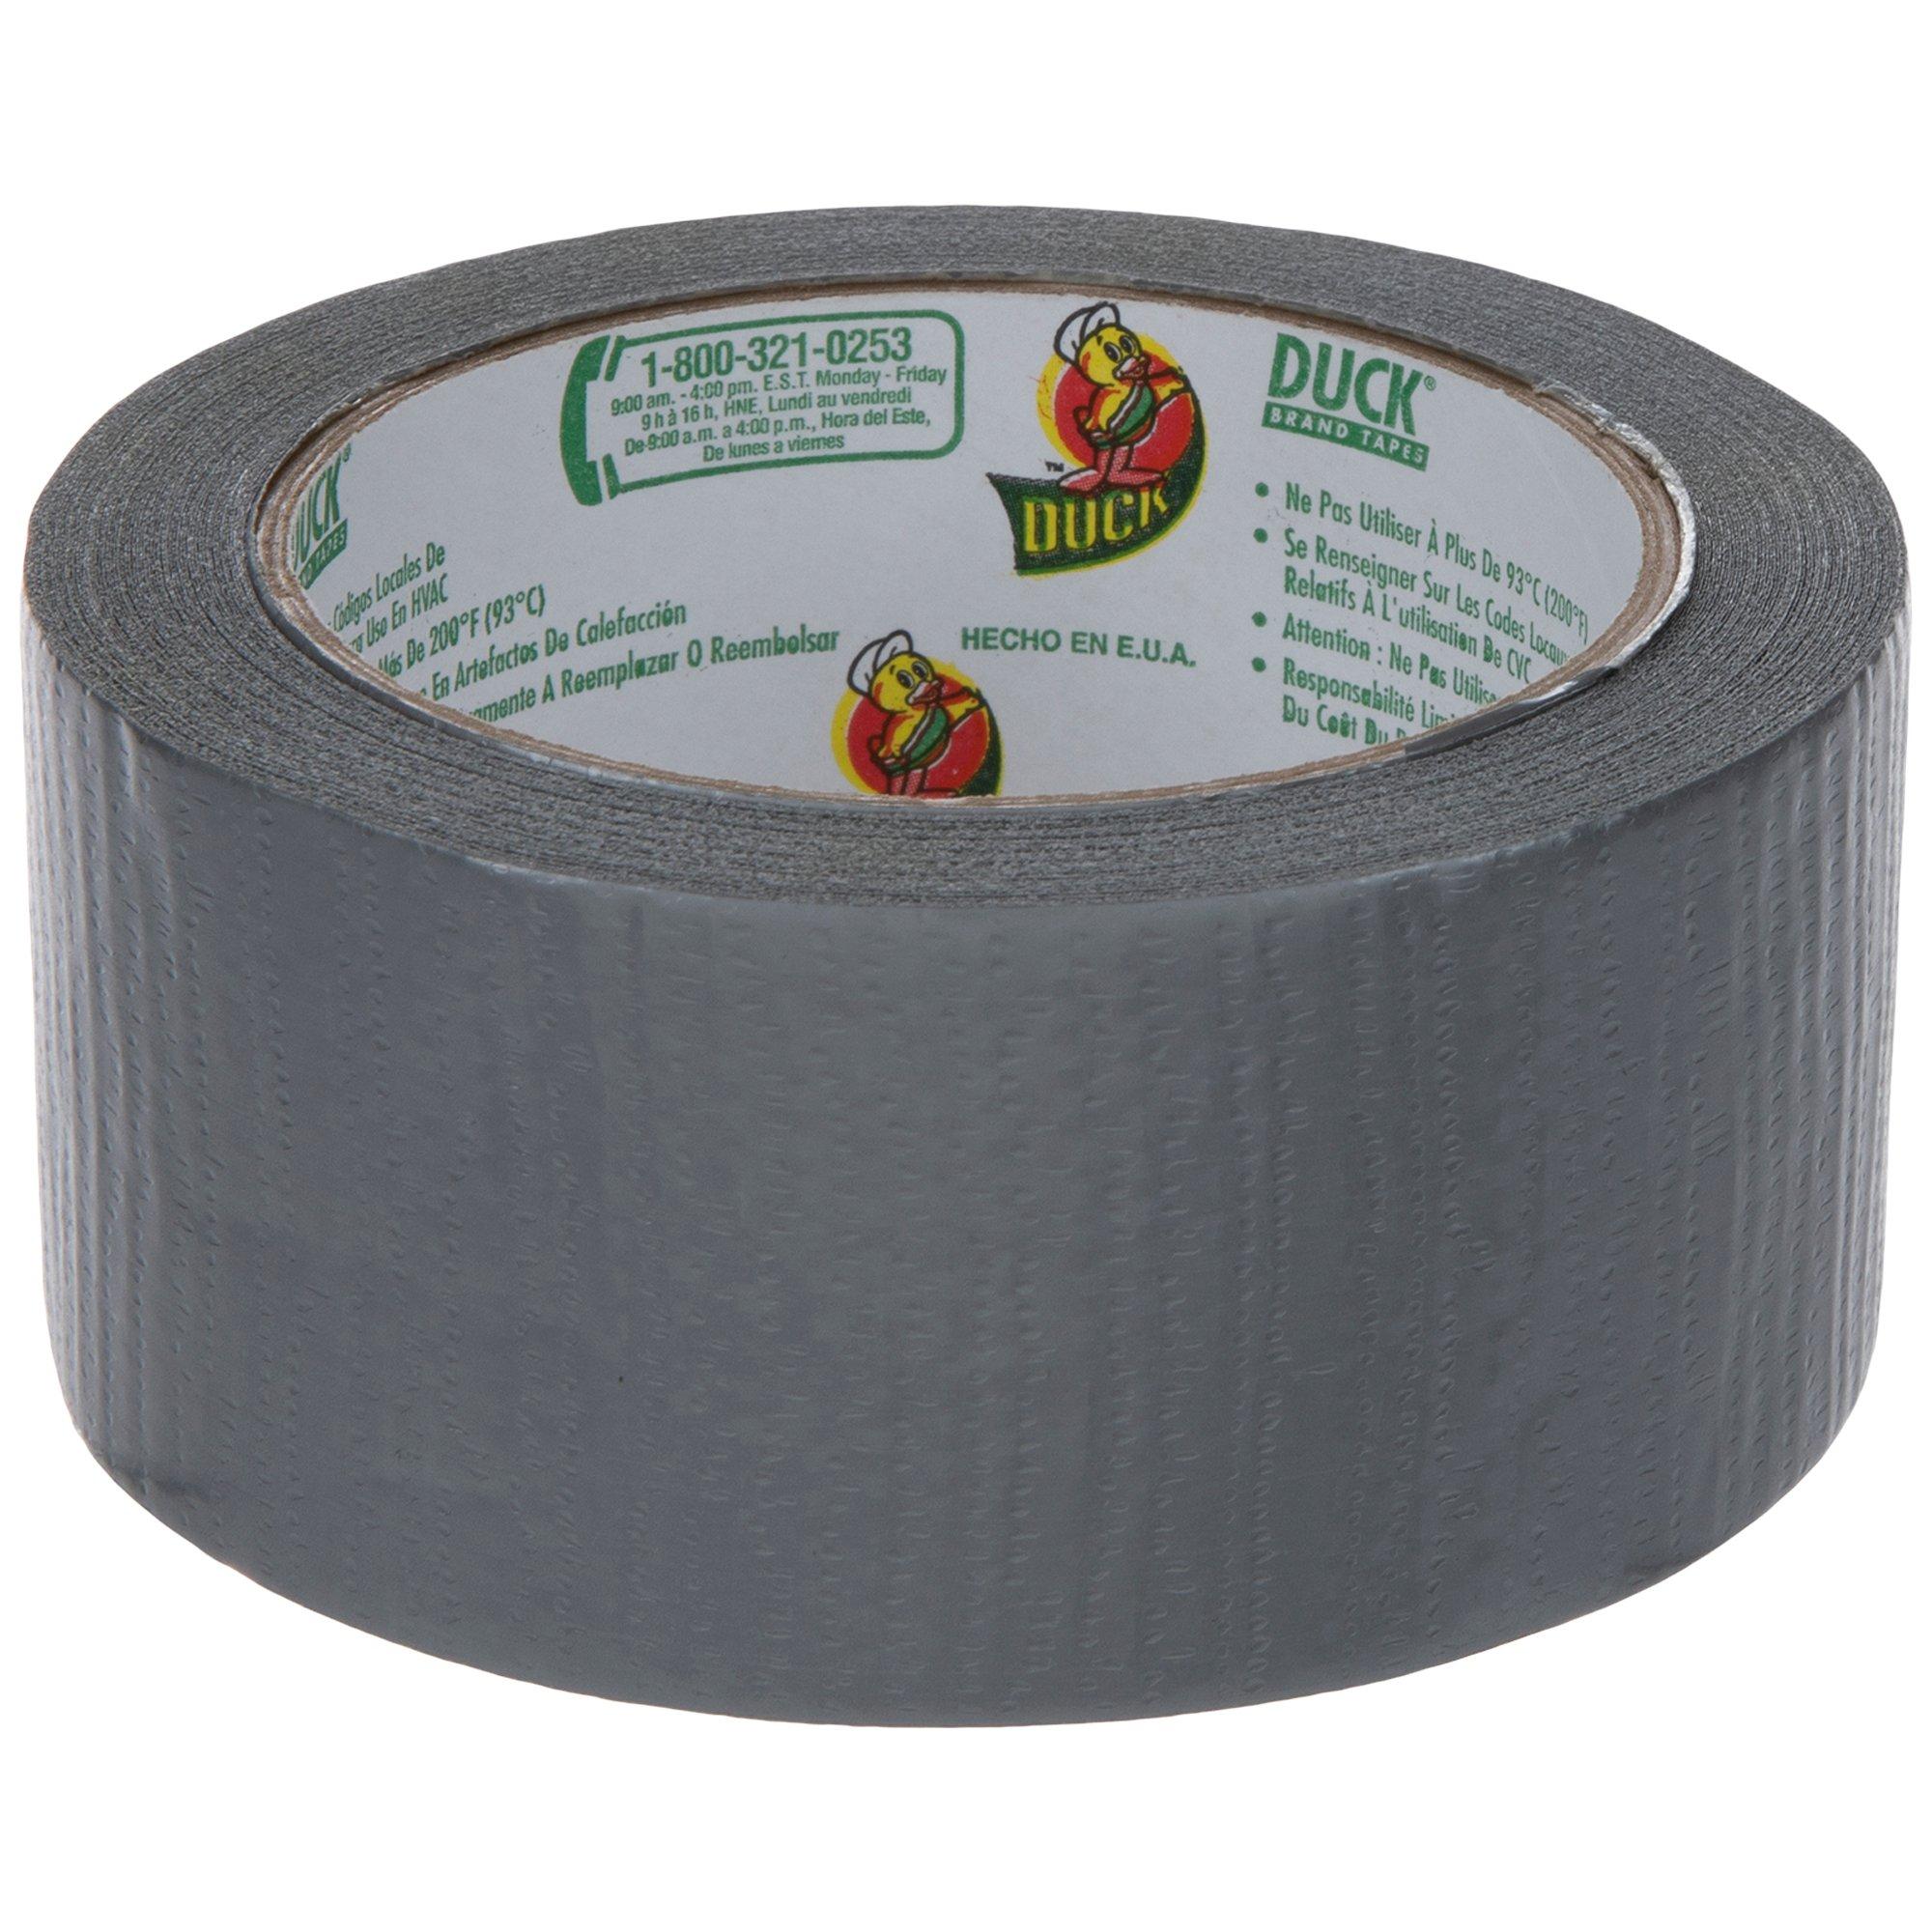 Patterned Duck Tape 1.88 X10yd-Burlap, 1 - Kroger